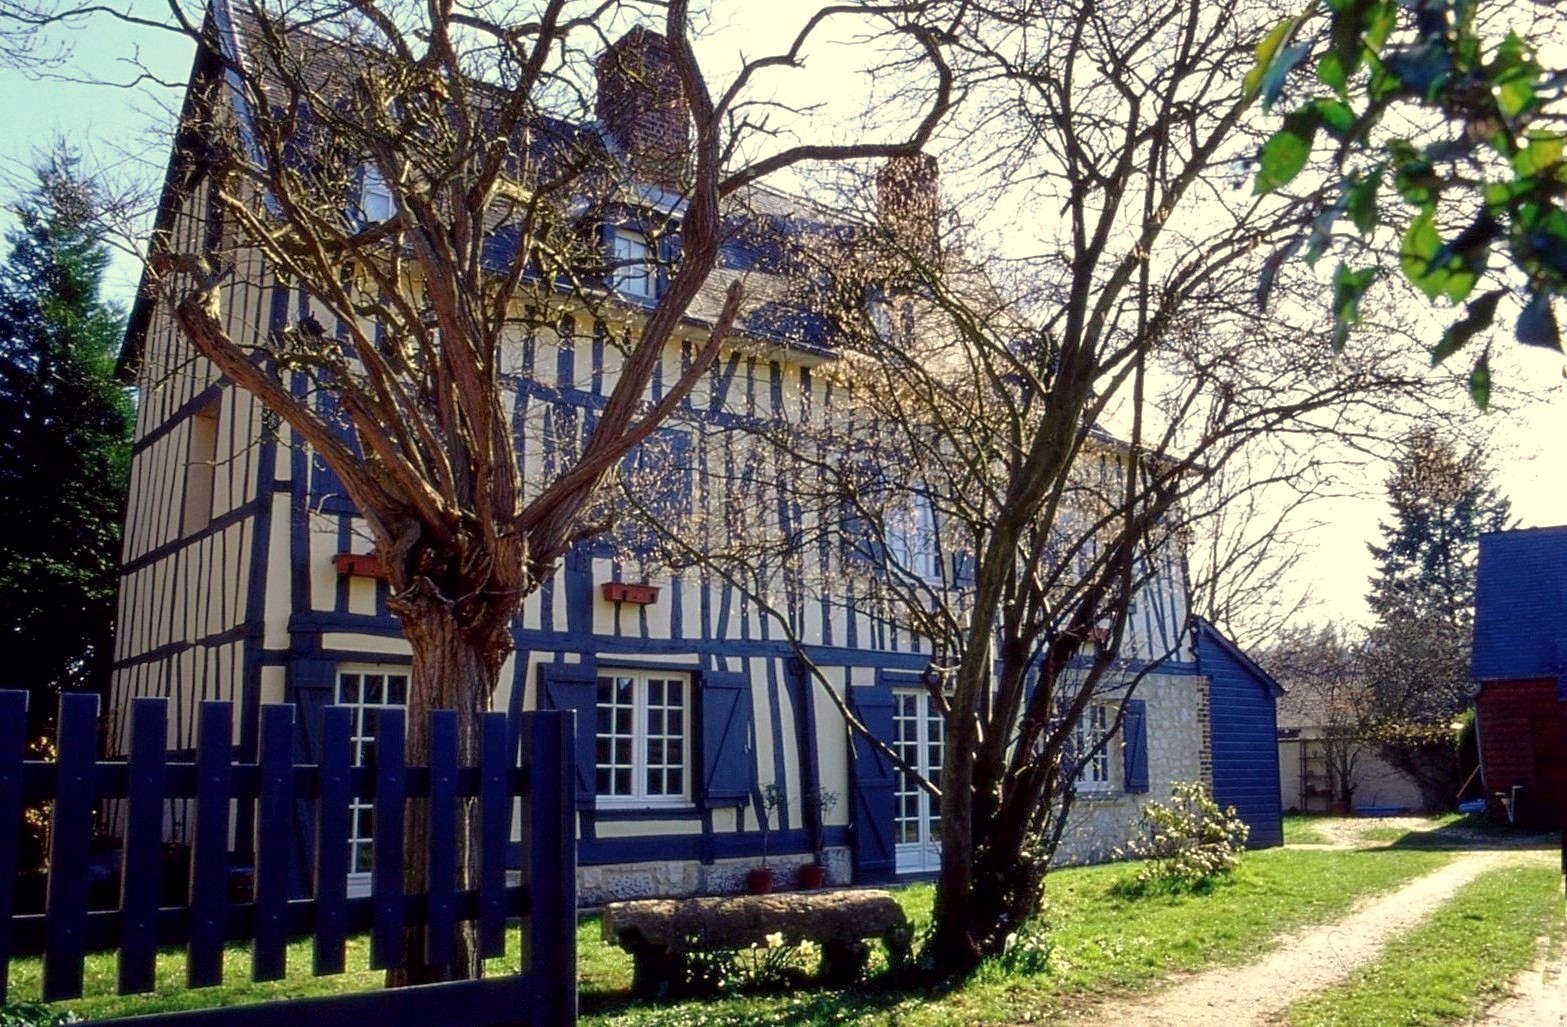 Maison à colombages près de Rouen